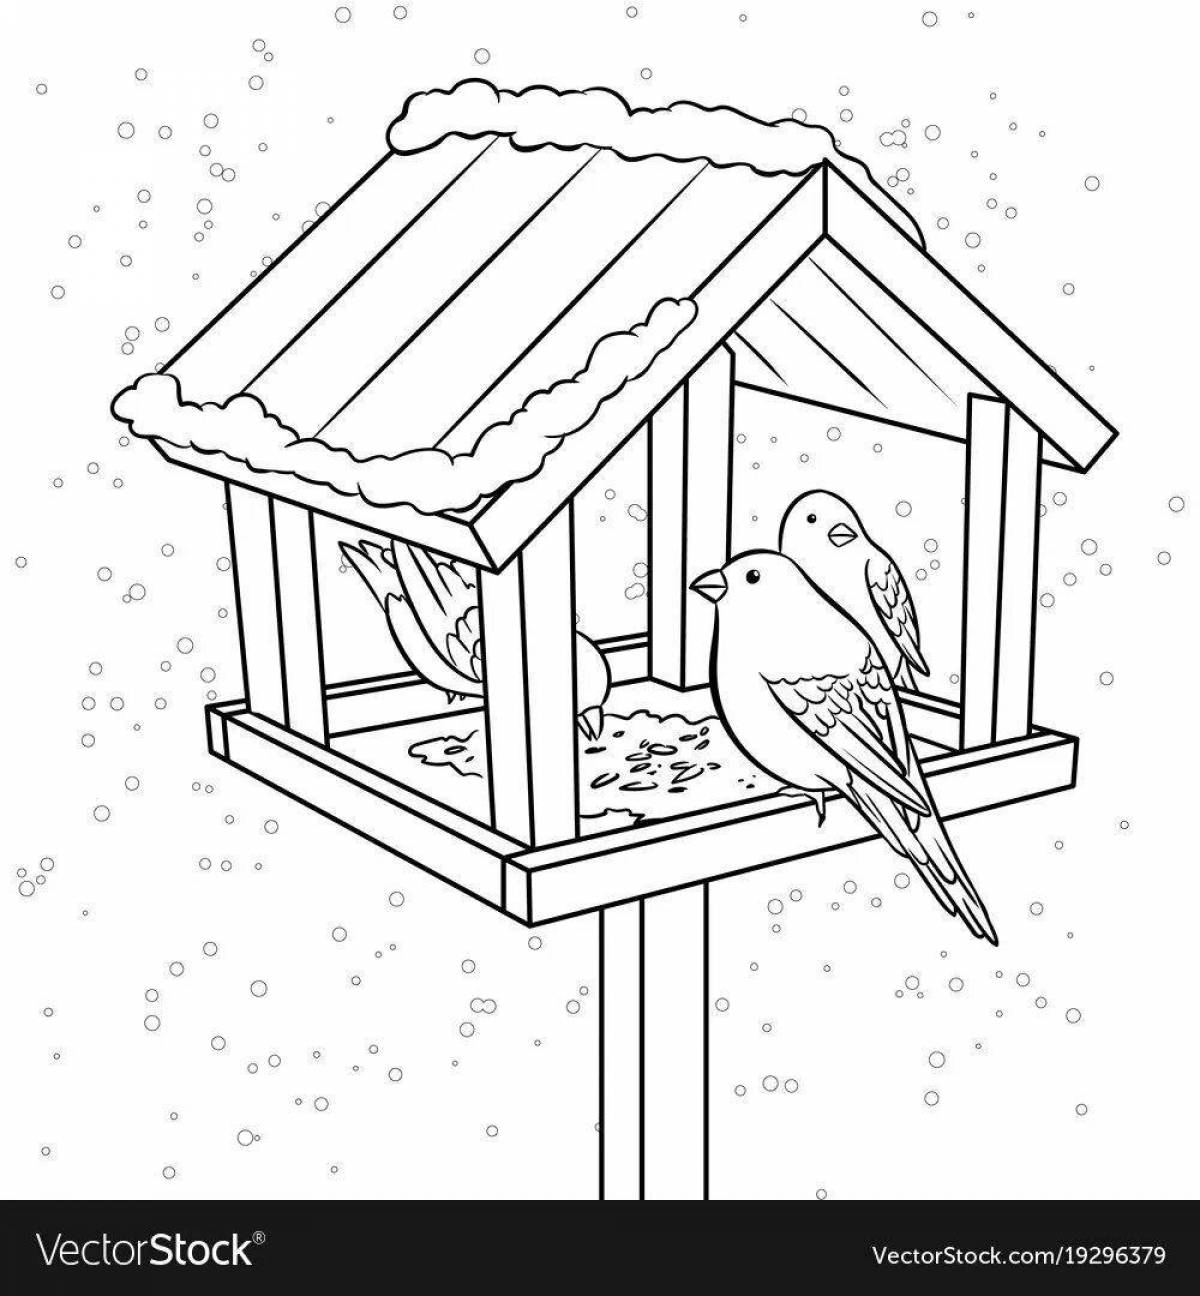 How to help birds in winter #2